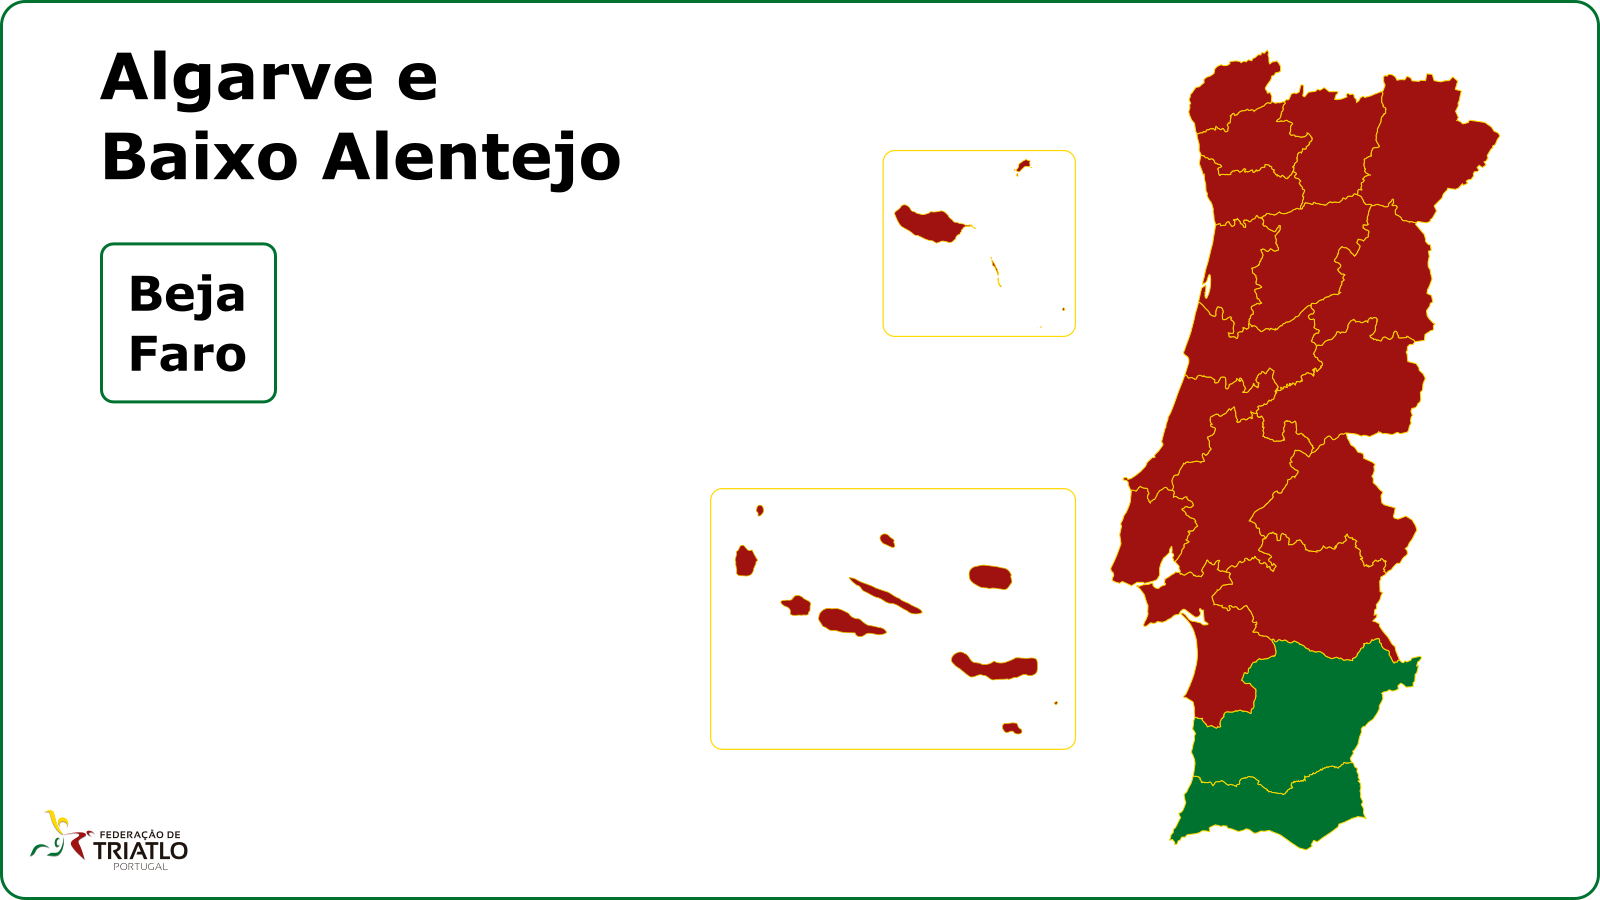 Mapa de Portugal com destaque do Algarve